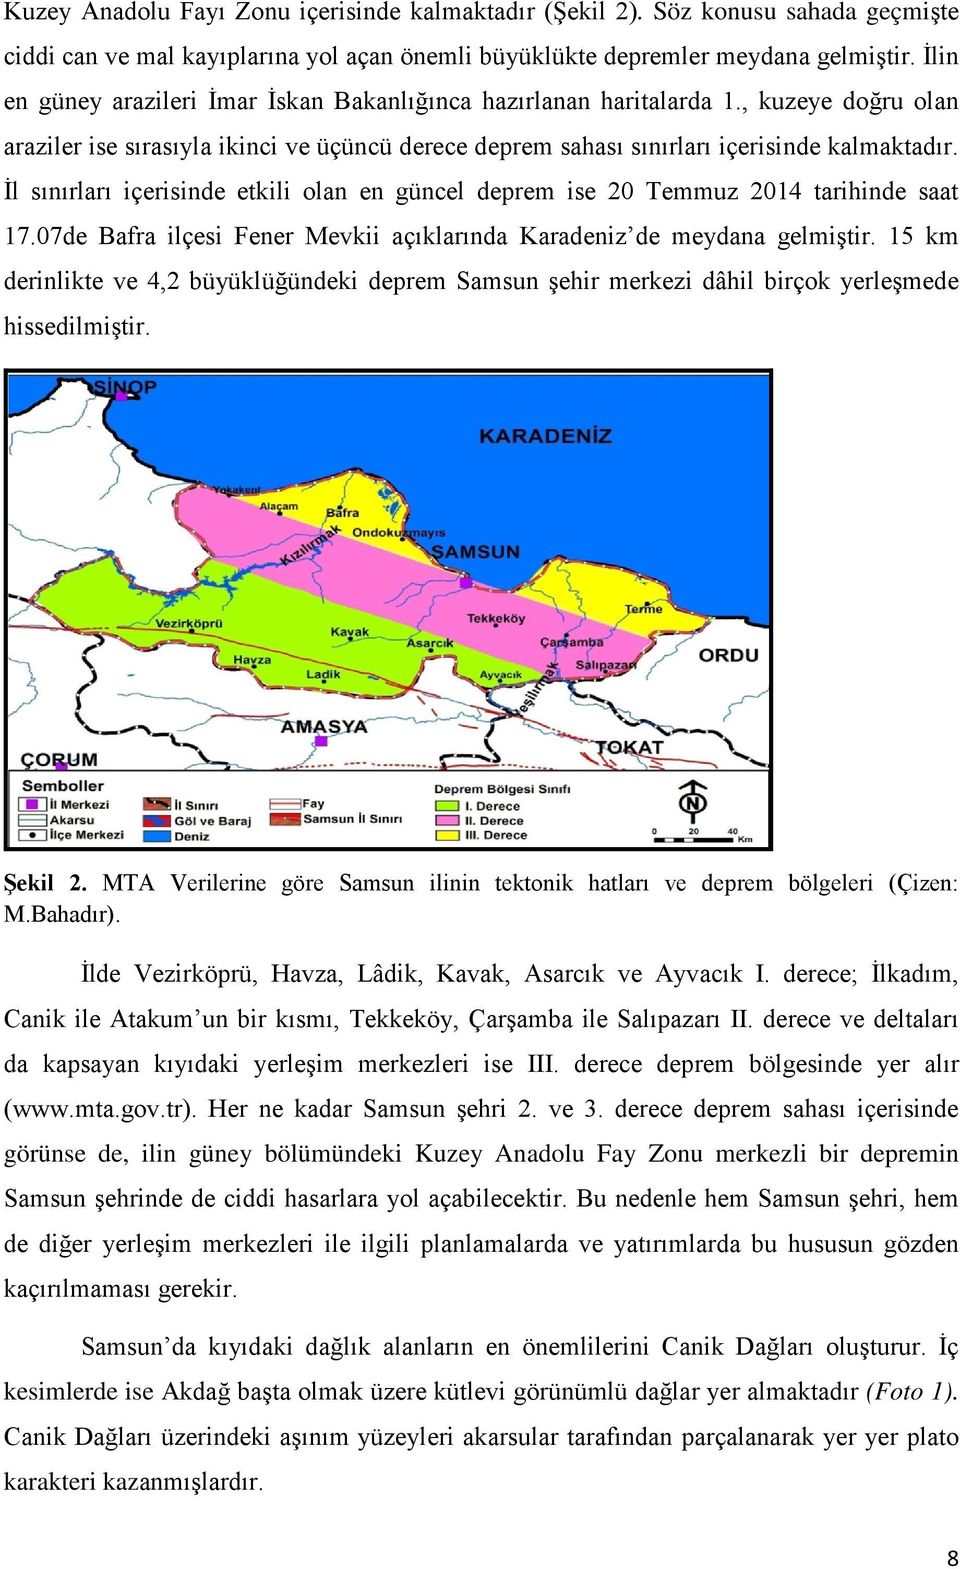 İl sınırları içerisinde etkili olan en güncel deprem ise 20 Temmuz 2014 tarihinde saat 17.07de Bafra ilçesi Fener Mevkii açıklarında Karadeniz de meydana gelmiştir.